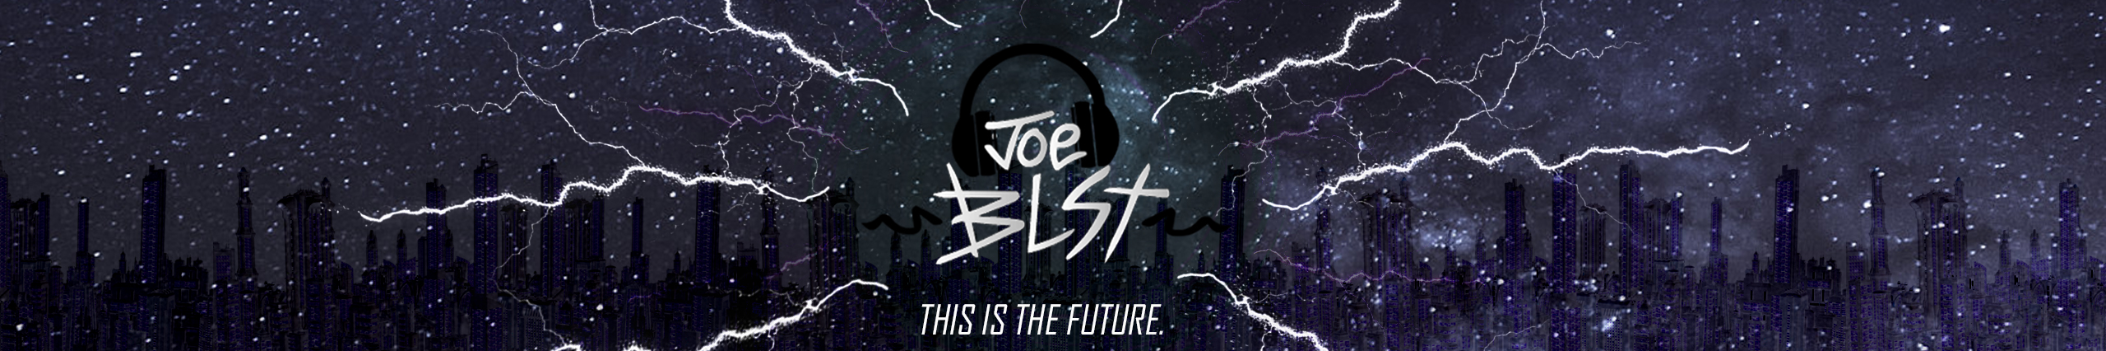 Joe BLST